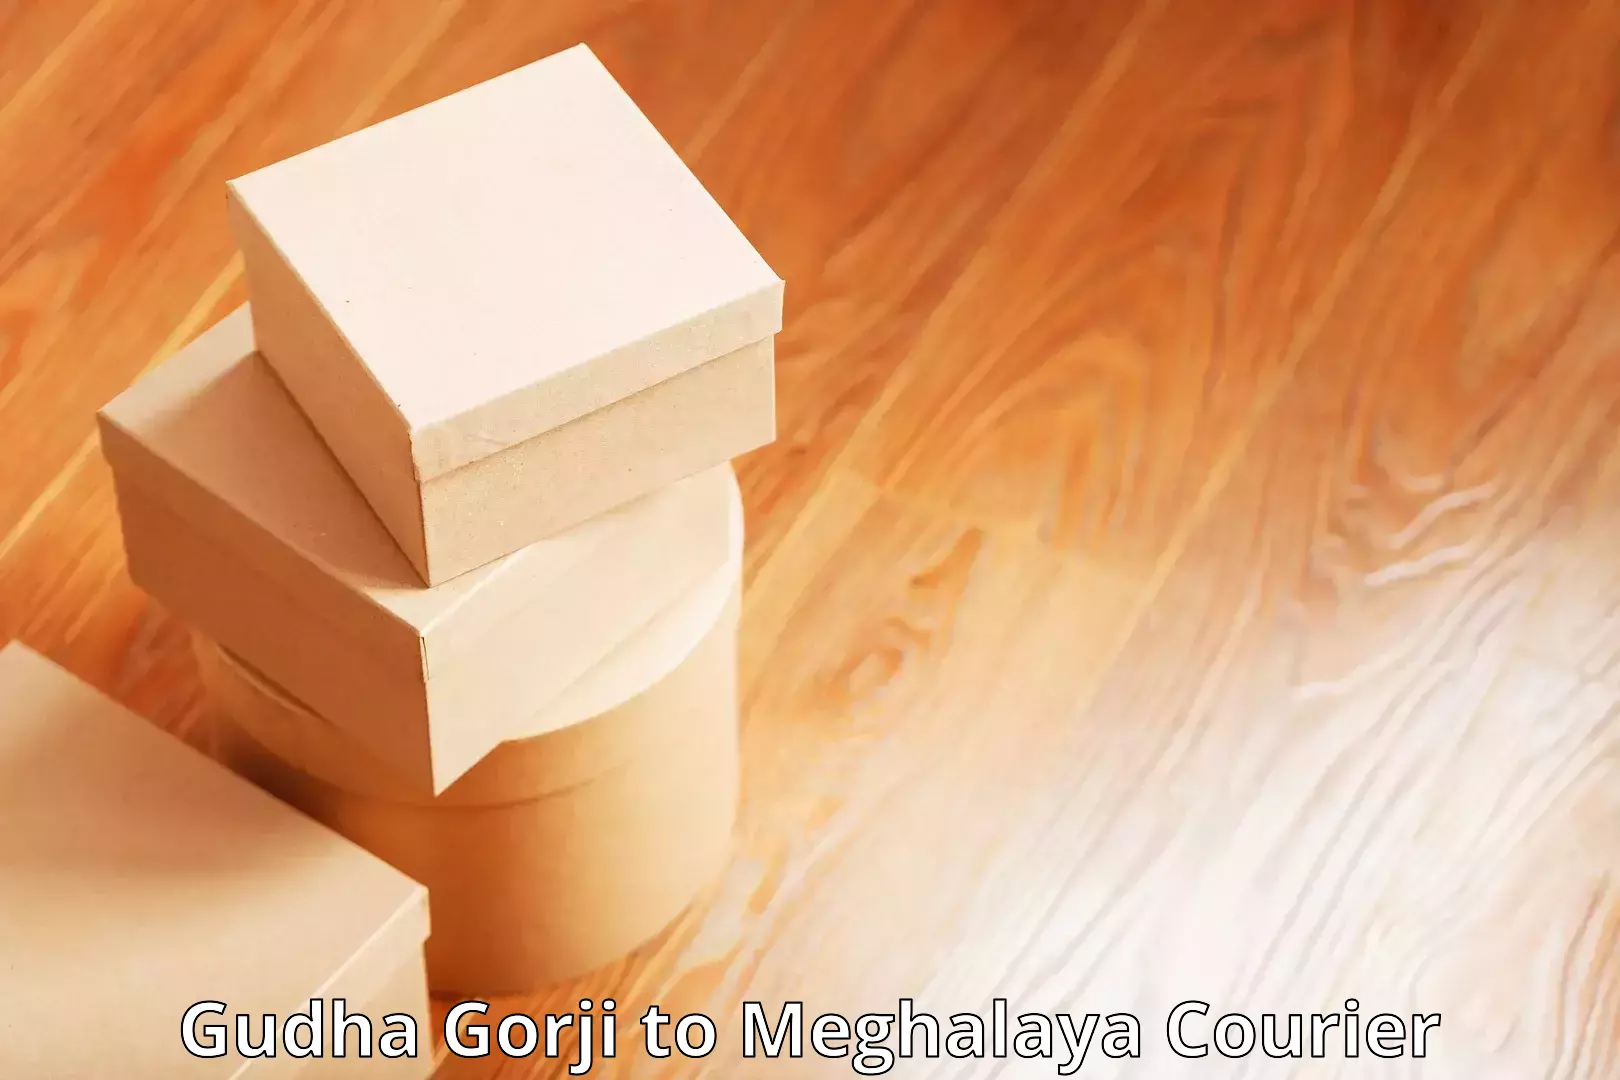 Affordable parcel service Gudha Gorji to NIT Meghalaya